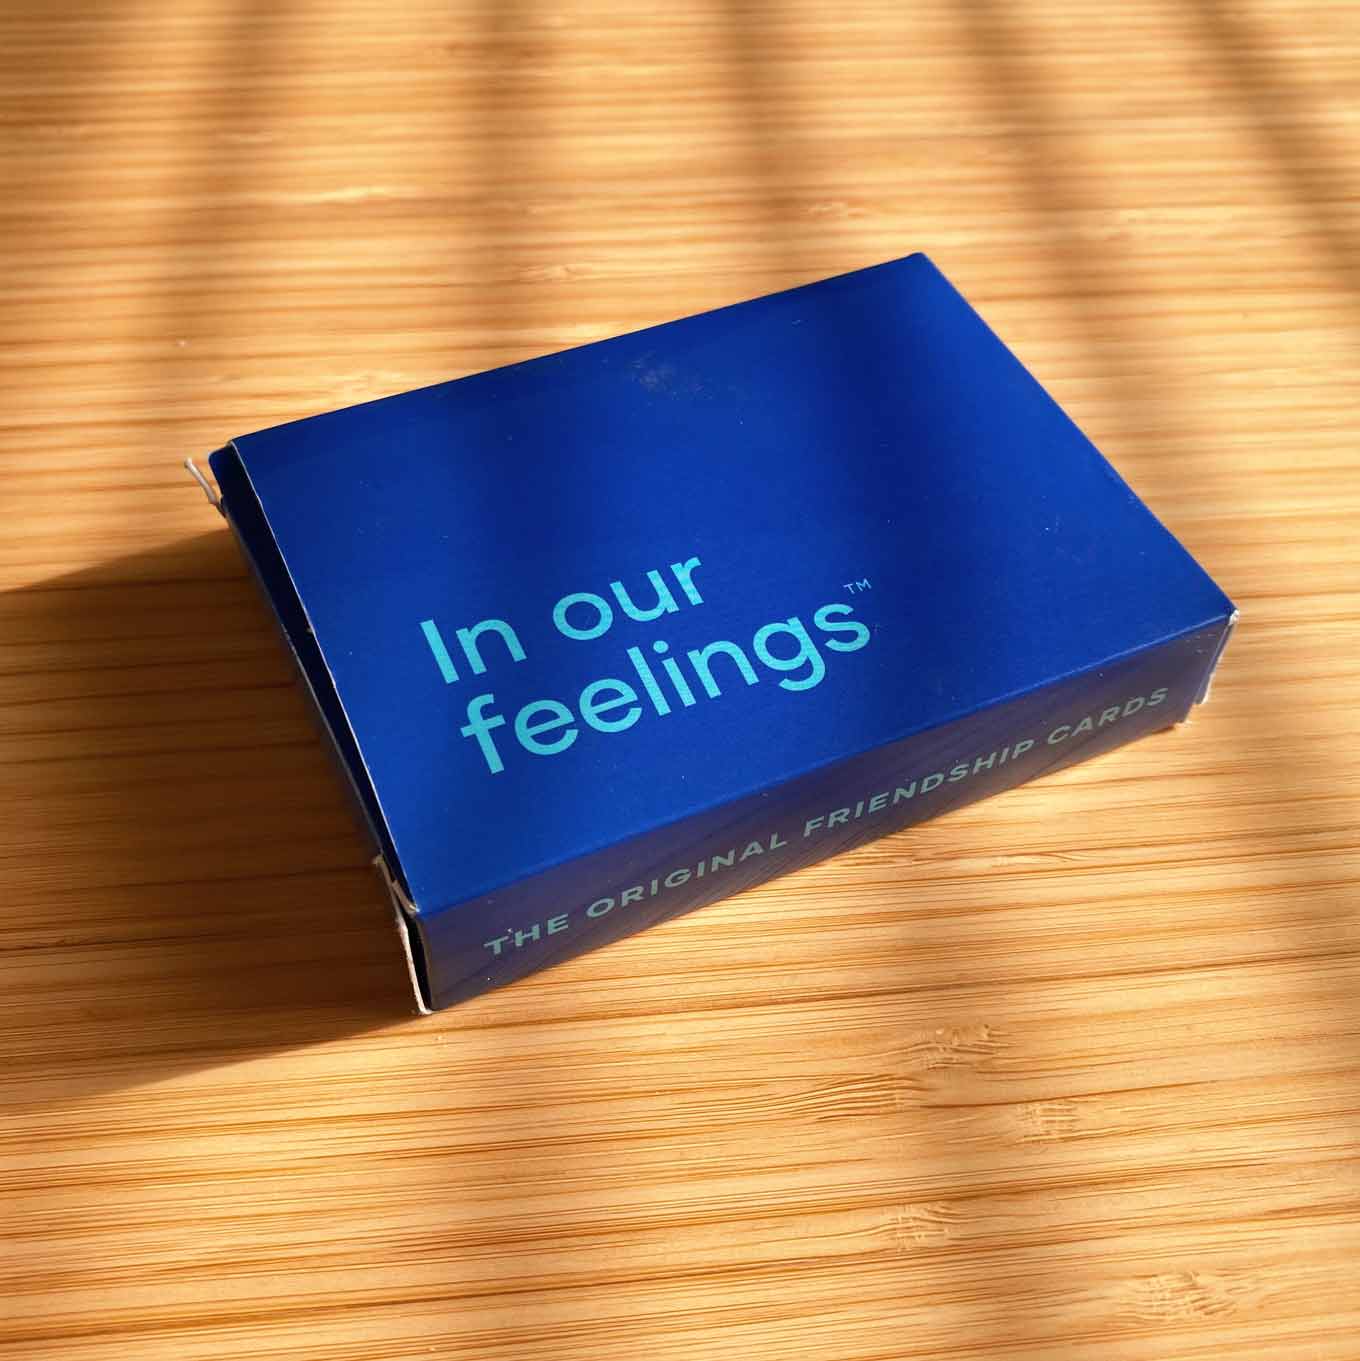 Blauwe doos voor een kaartspel, met de woorden In Ou Feelings: The Original Friendship Cards